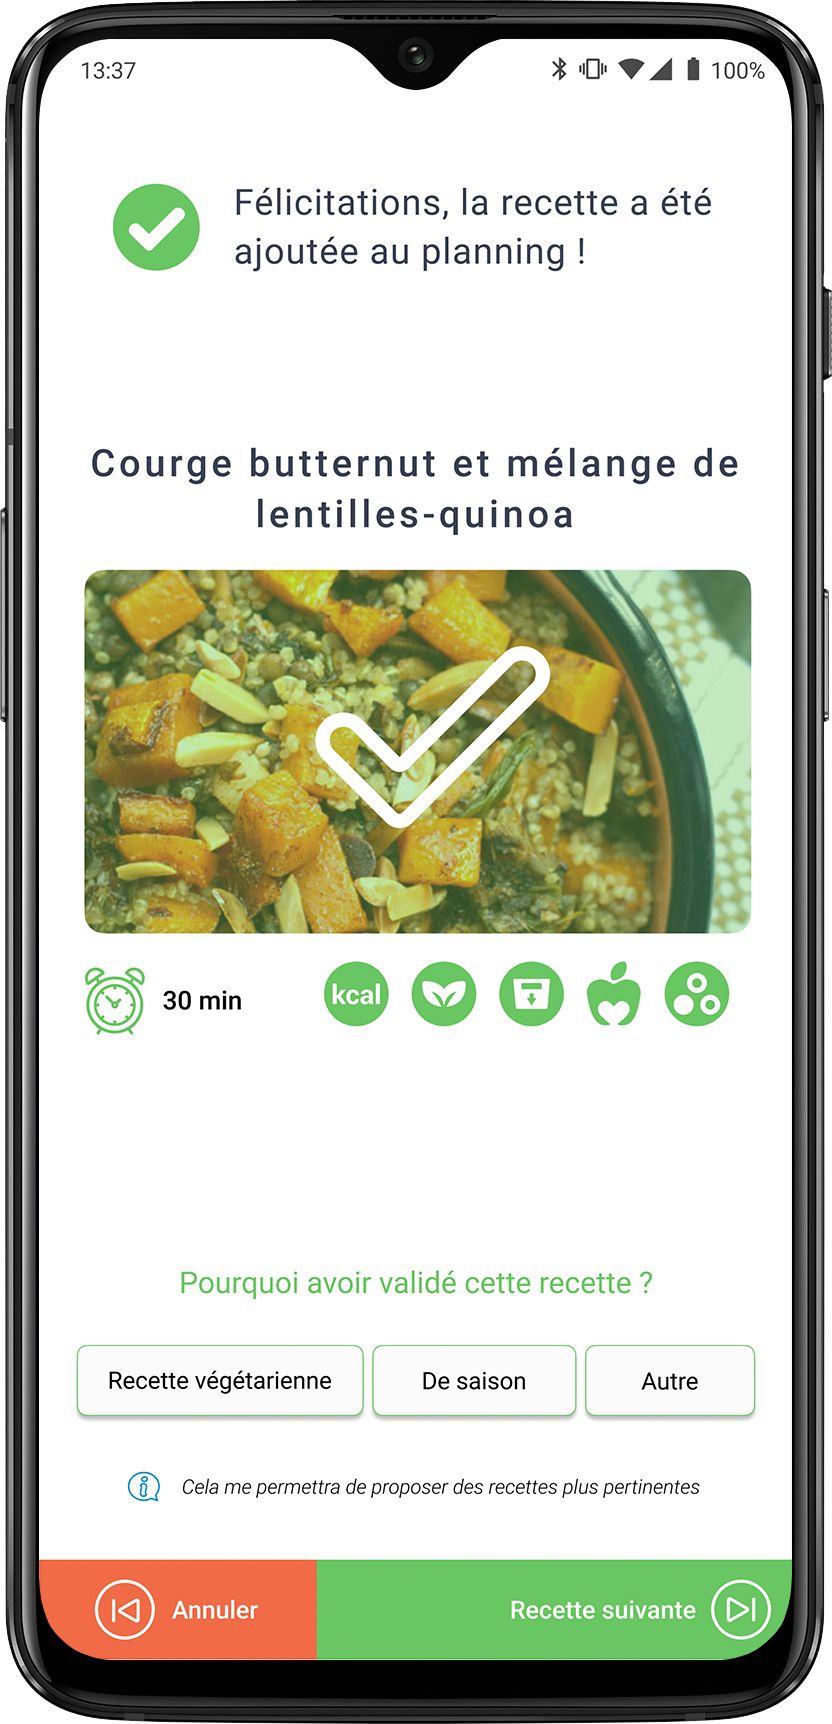 La recette de courge butternut - lentilles - quinoa sélectionnée par un utilisateur dans l'application Octave avec ses différentes caractéristiques